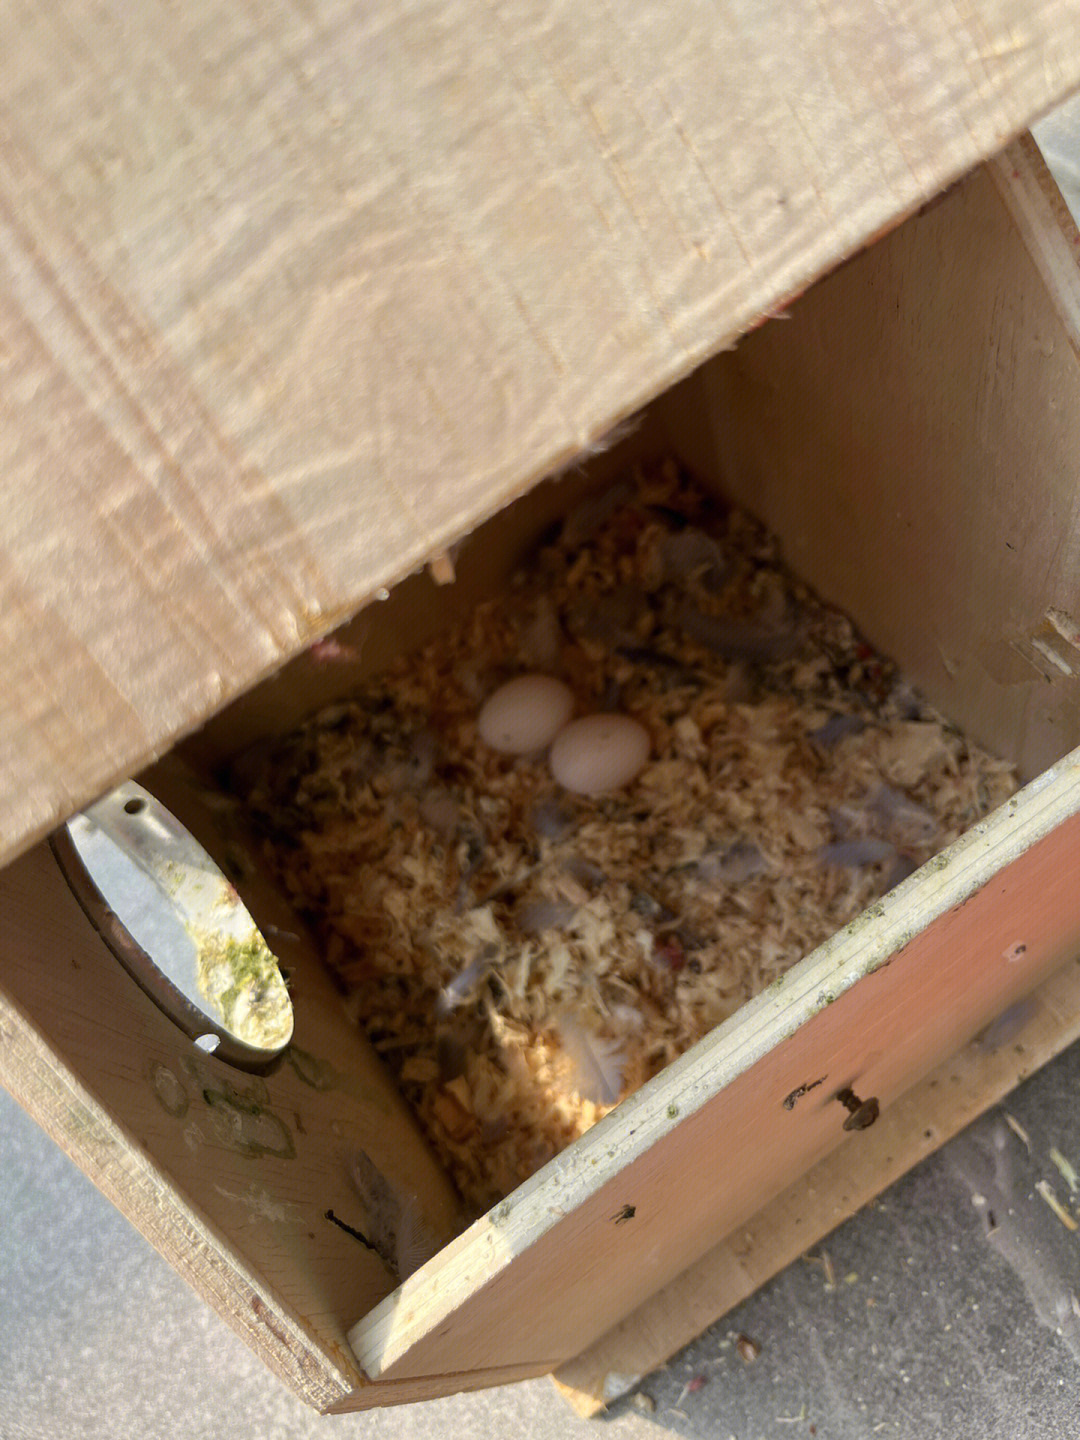 孵化鹦鹉蛋天数变化图图片